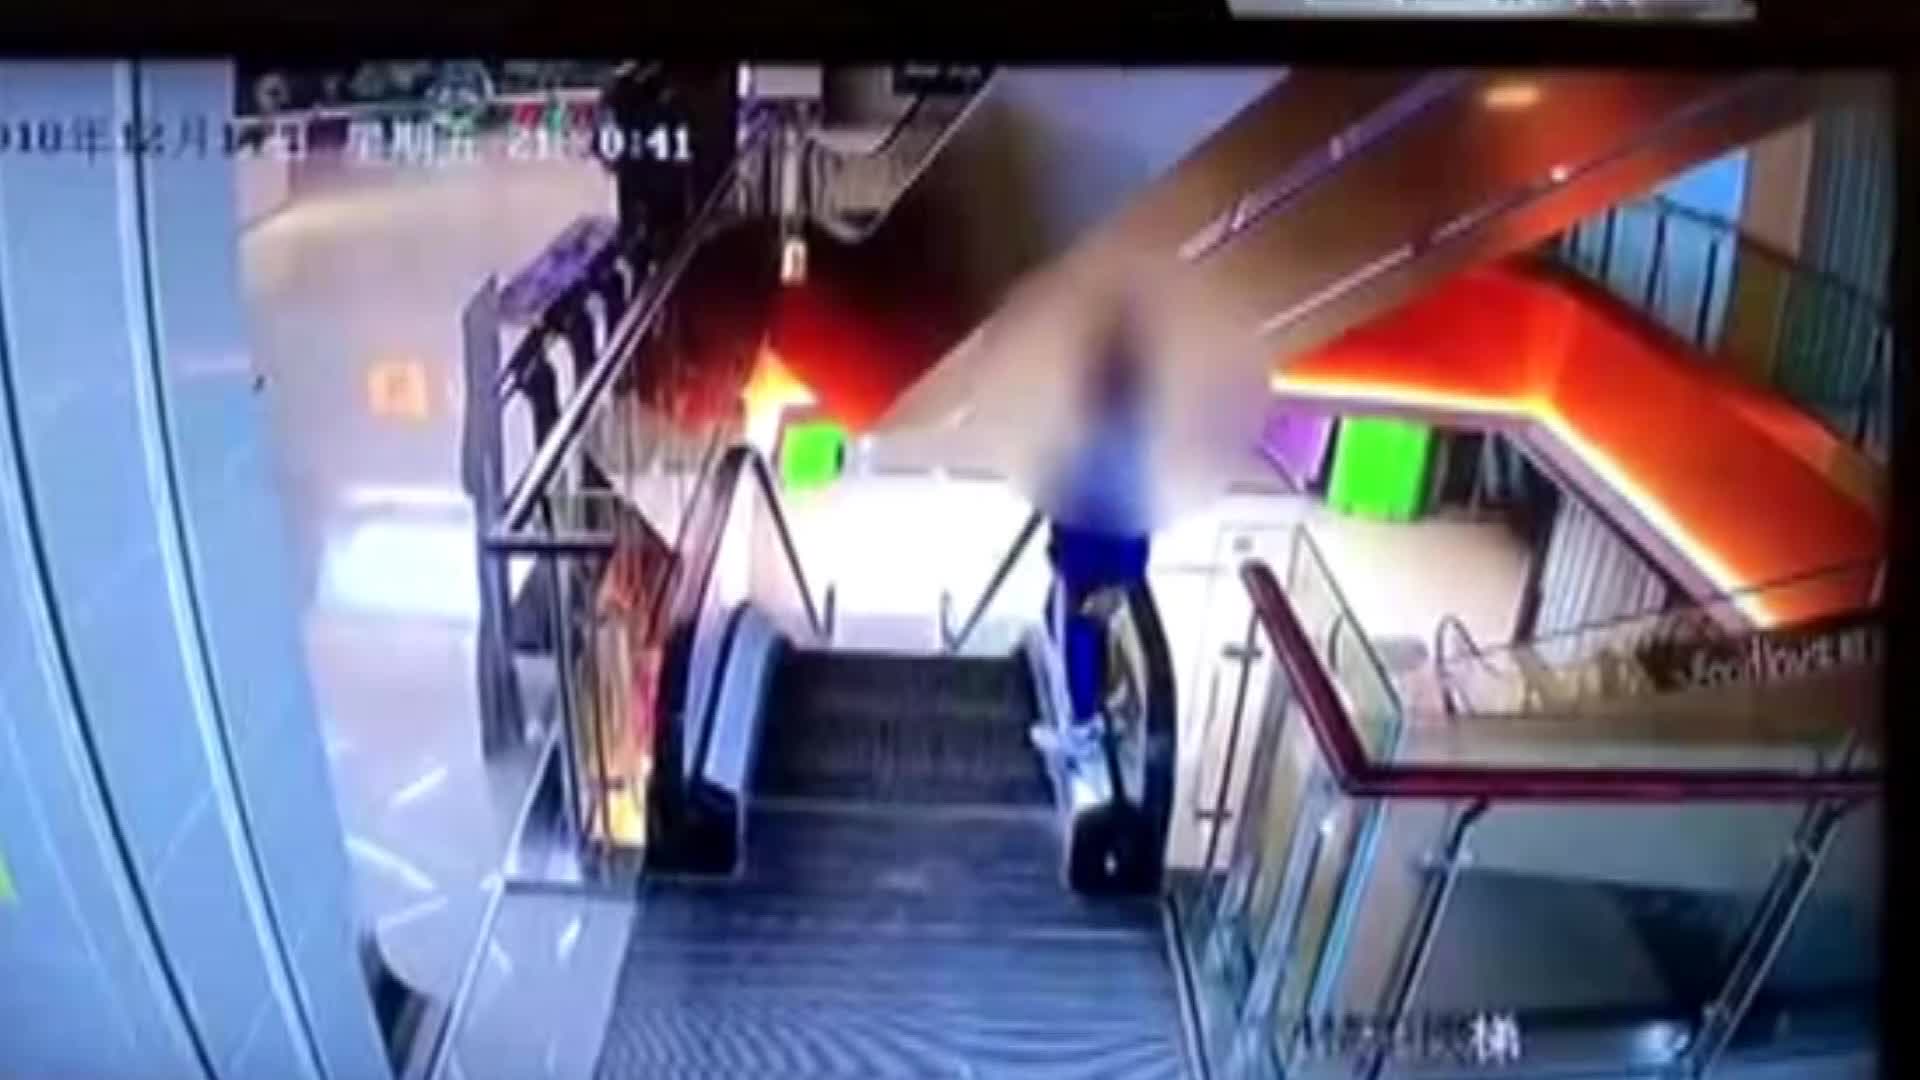 Video-Hot - Clip: Thót tim khoảnh khắc cậu bé rơi tự do xuống từ thang cuốn